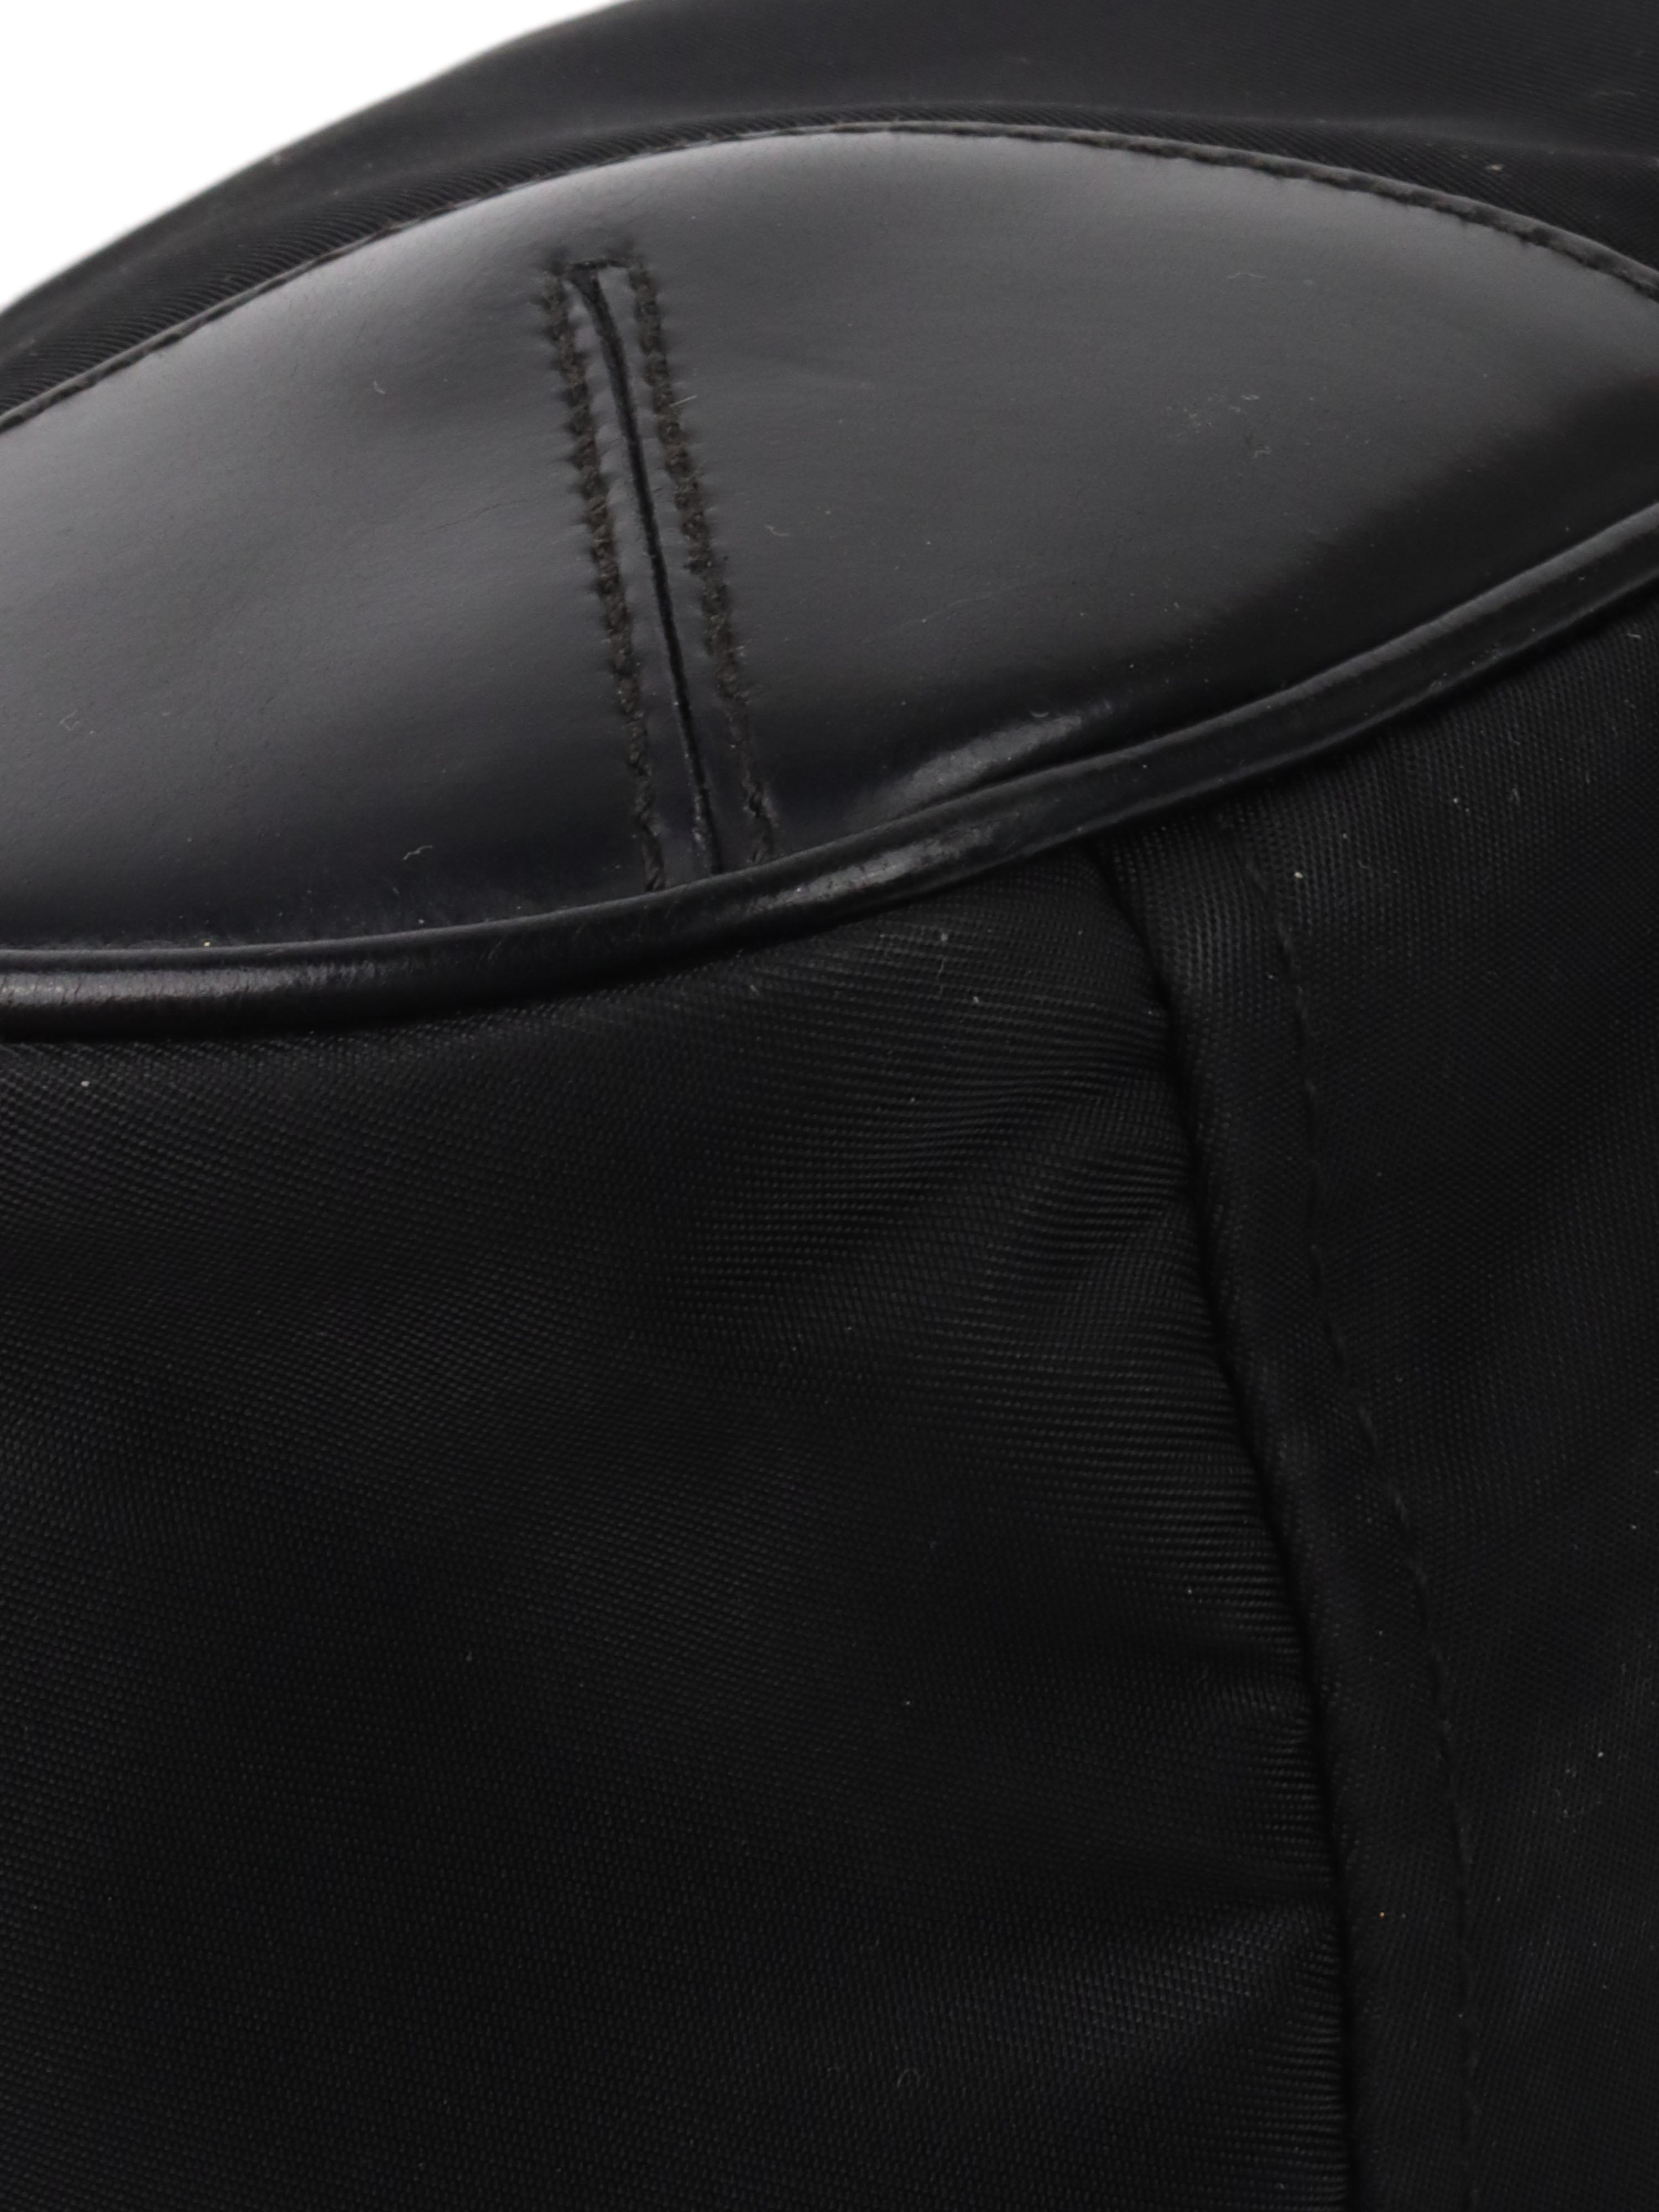 Prada Black Nylon Vintage Shoulder Bag.